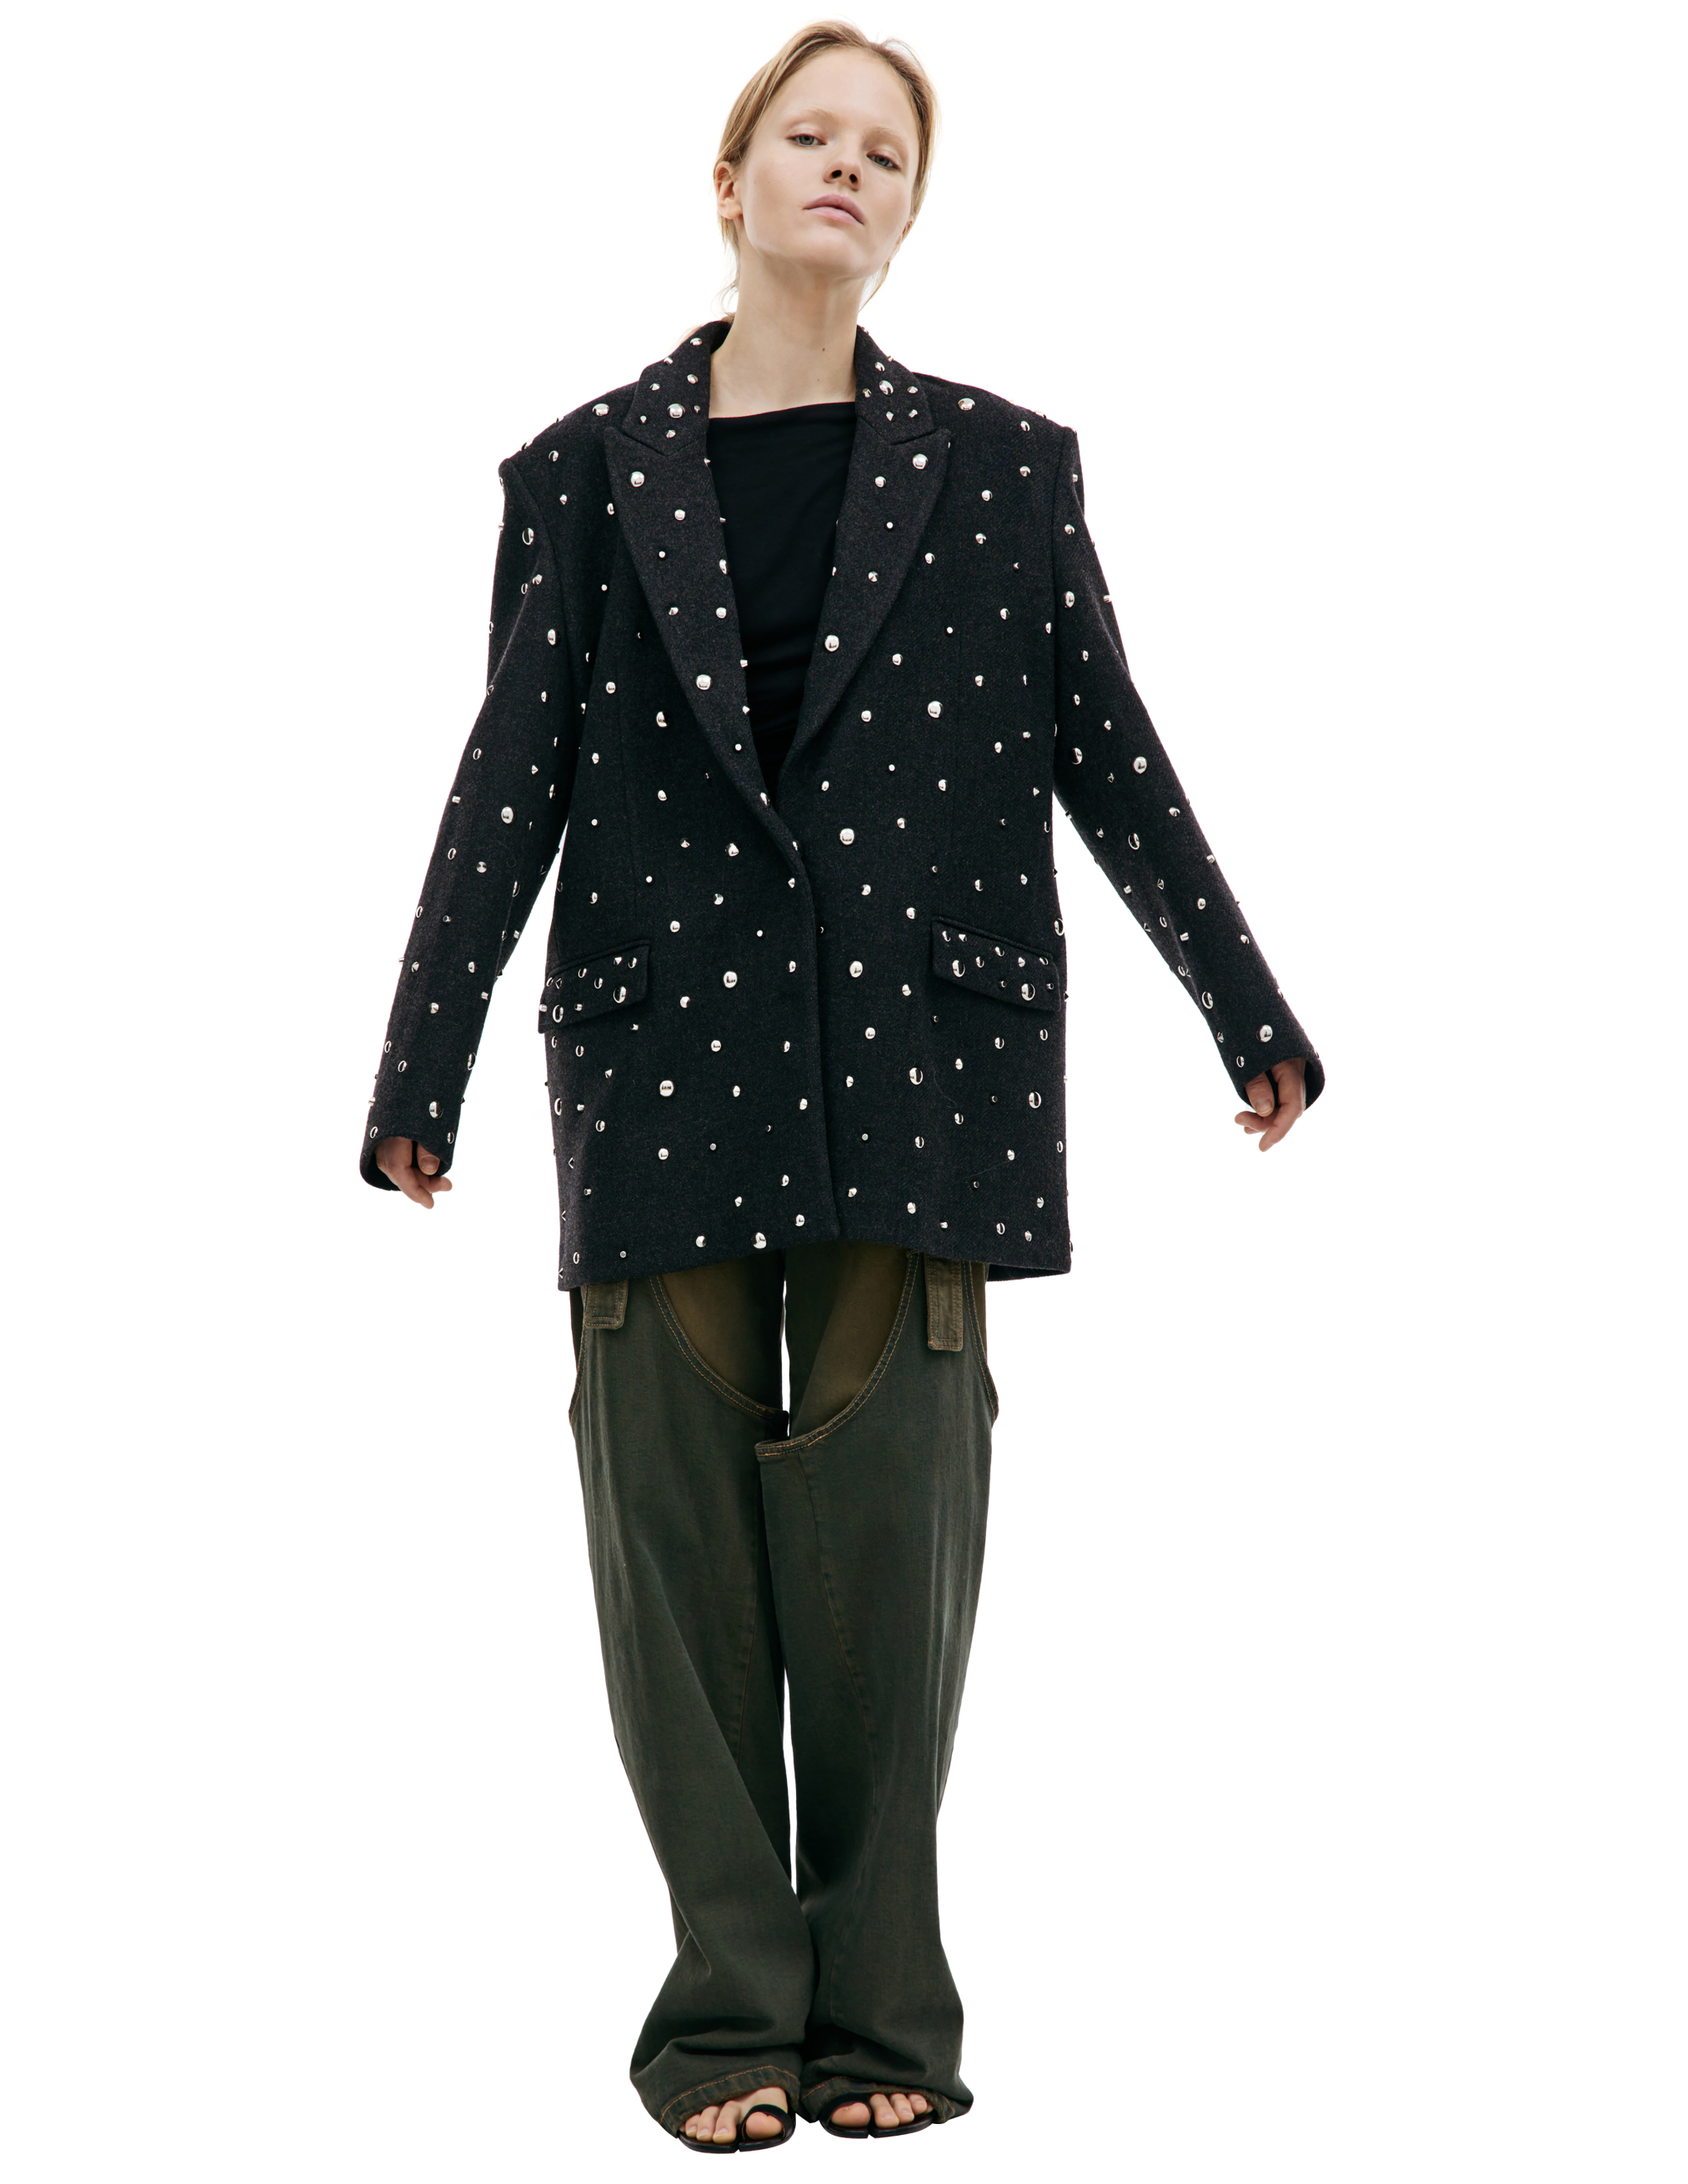 Шерстяной пиджак с металлическими клепками Blumarine A34/4S006A/N0936, размер 40